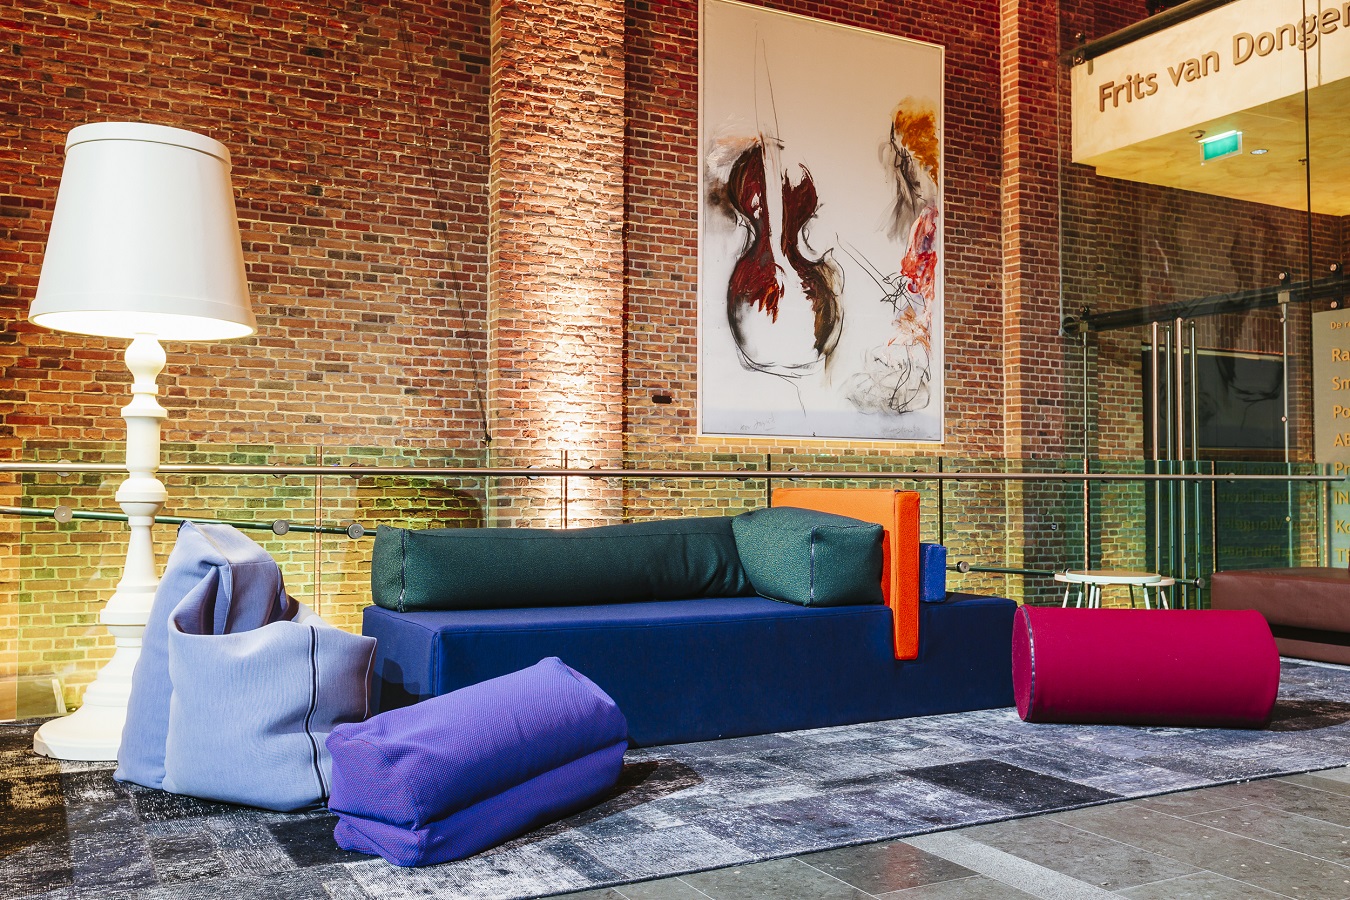 borstel aantrekkelijk Snel Dutch Design meubilair zorgt voor interactie in Philharmonie | Events.nl